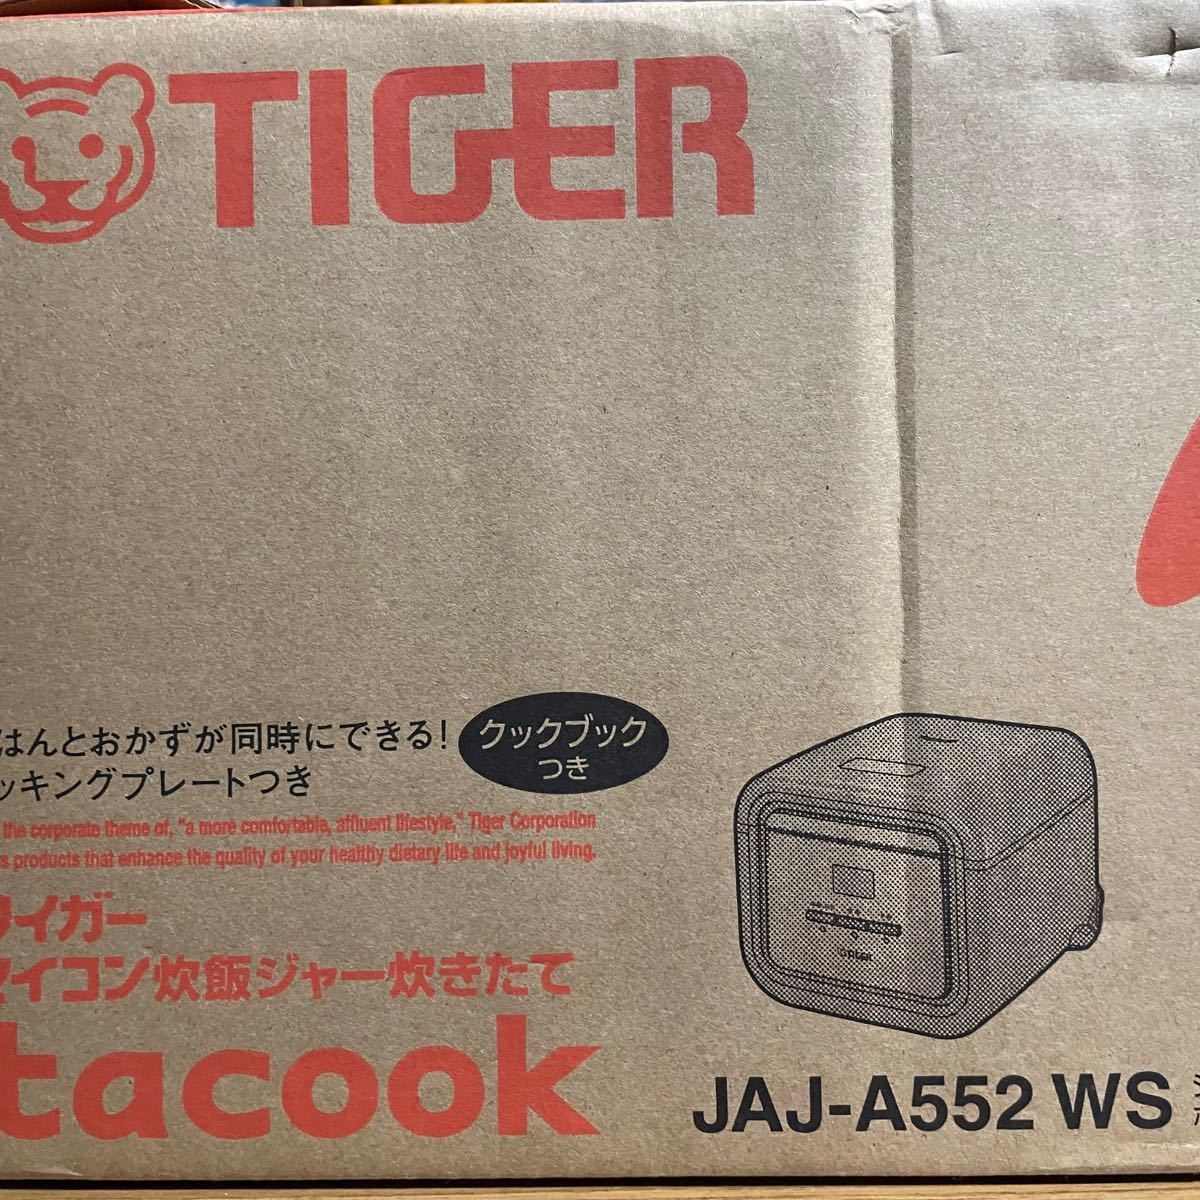 【未使用品】タイガー 炊飯器 TACOOK  TIGER マイコン炊飯ジャー 炊飯器3合